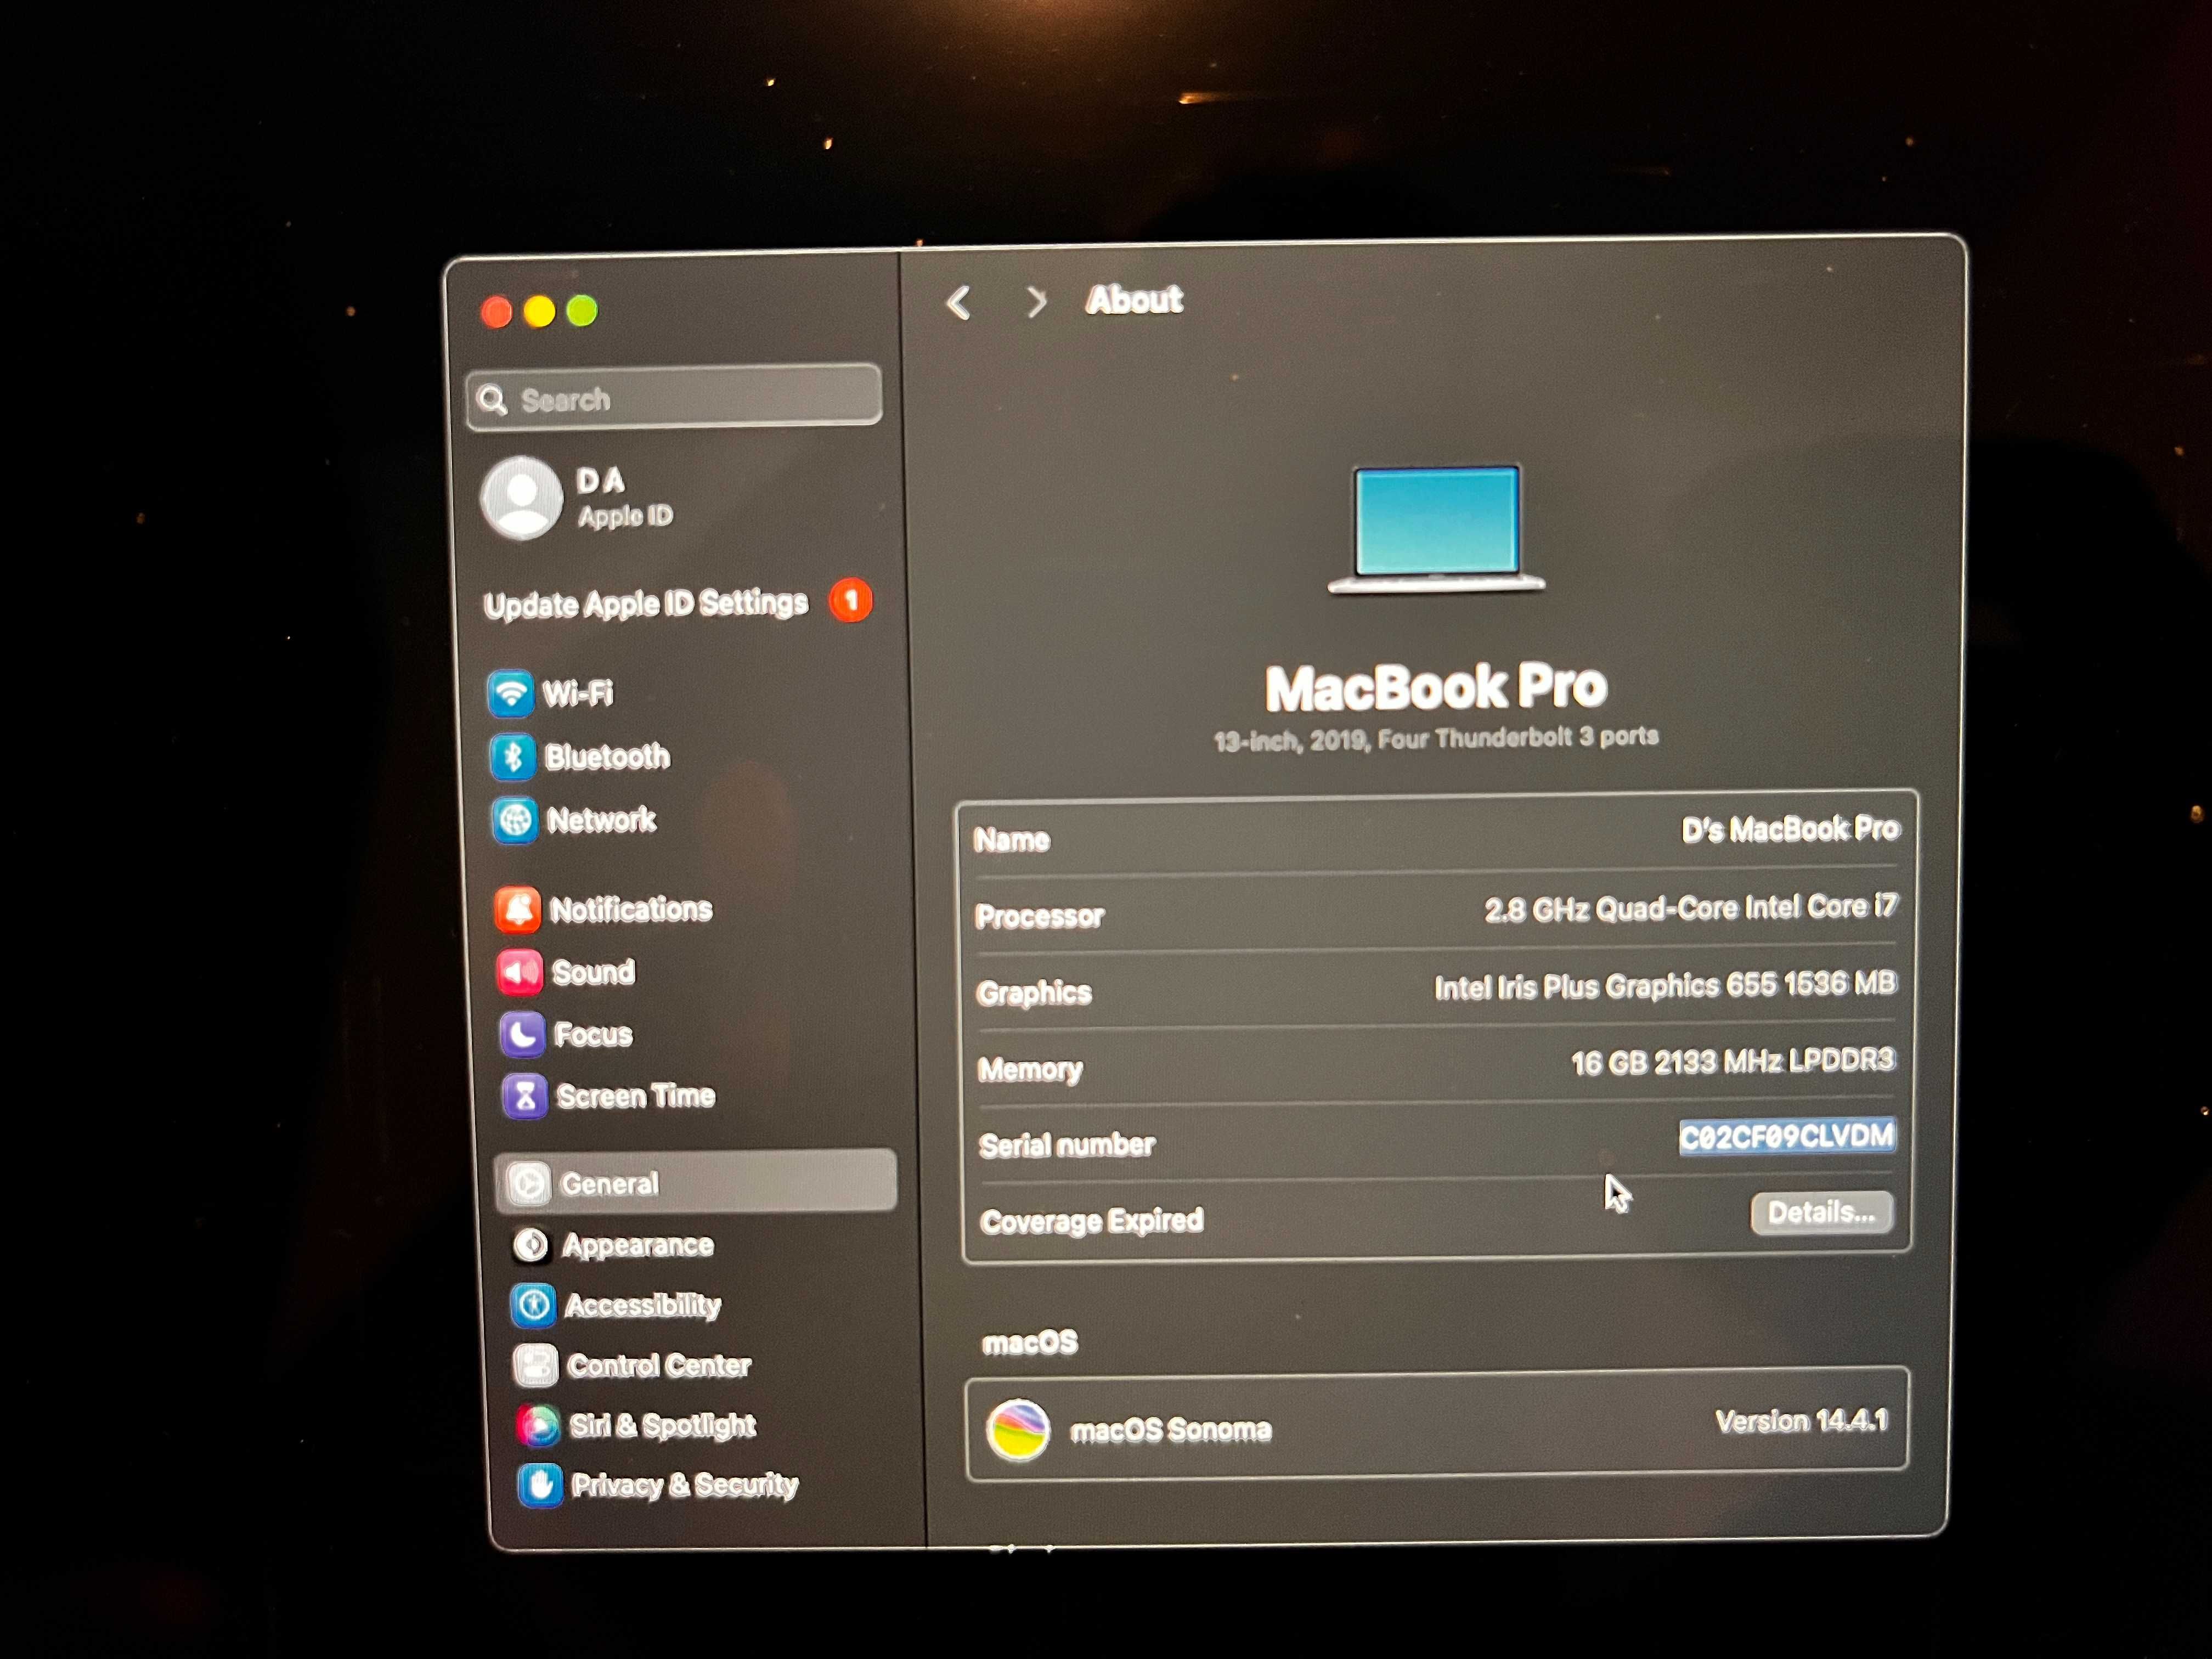 Macbook Pro 13" 2019, i7, 16gb RAM, 512gb SSD, 4 Thunderbolt 3 ports